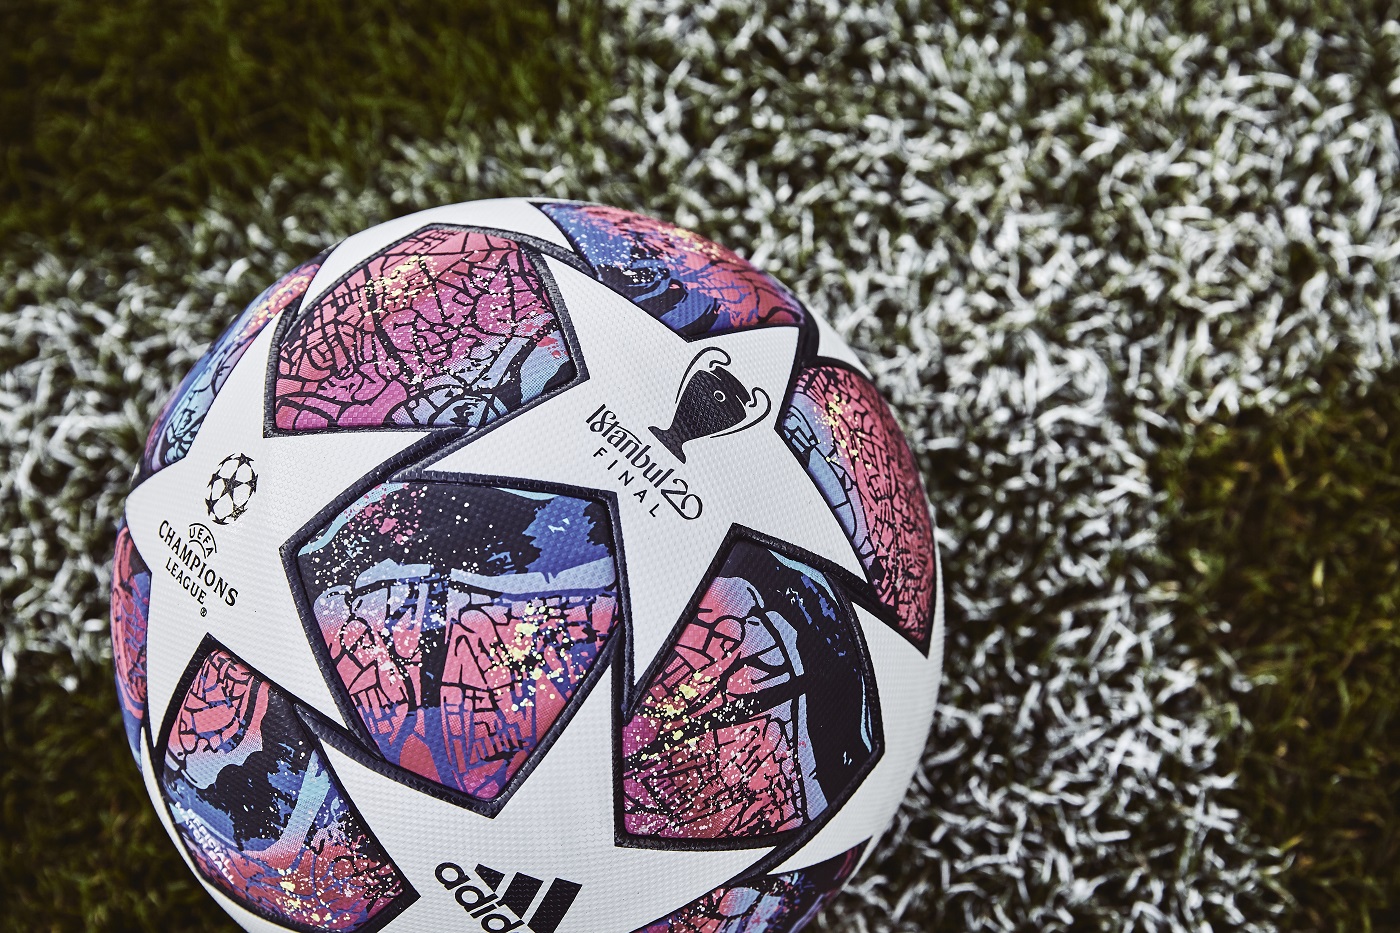 Euro 2024 : l'UEFA dévoile un ballon connecté, nouvel assistant